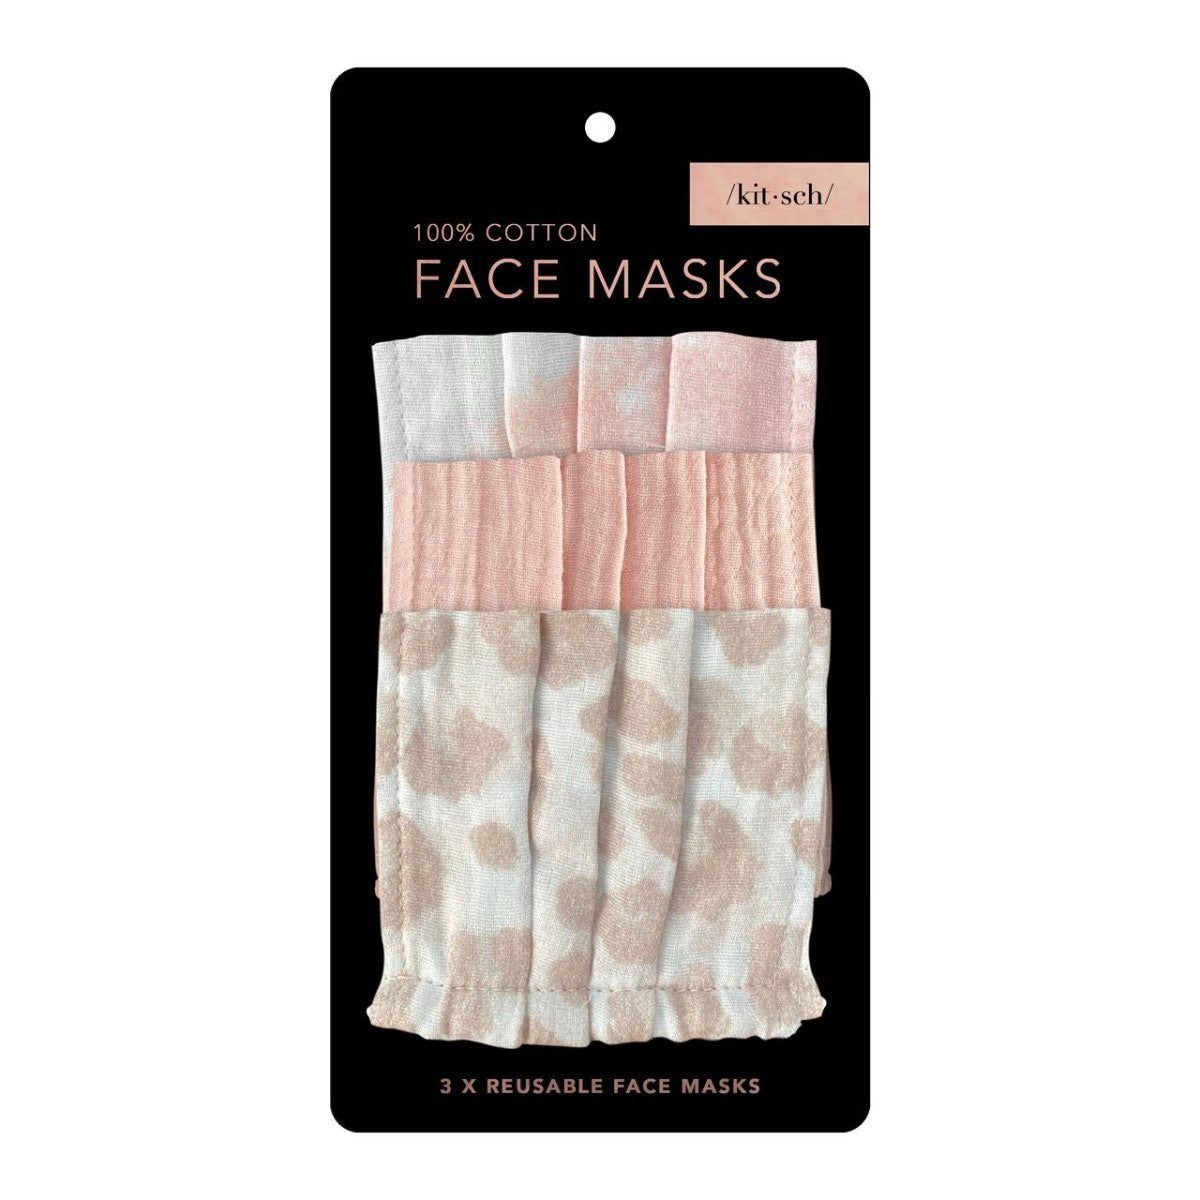 Cotton face mask